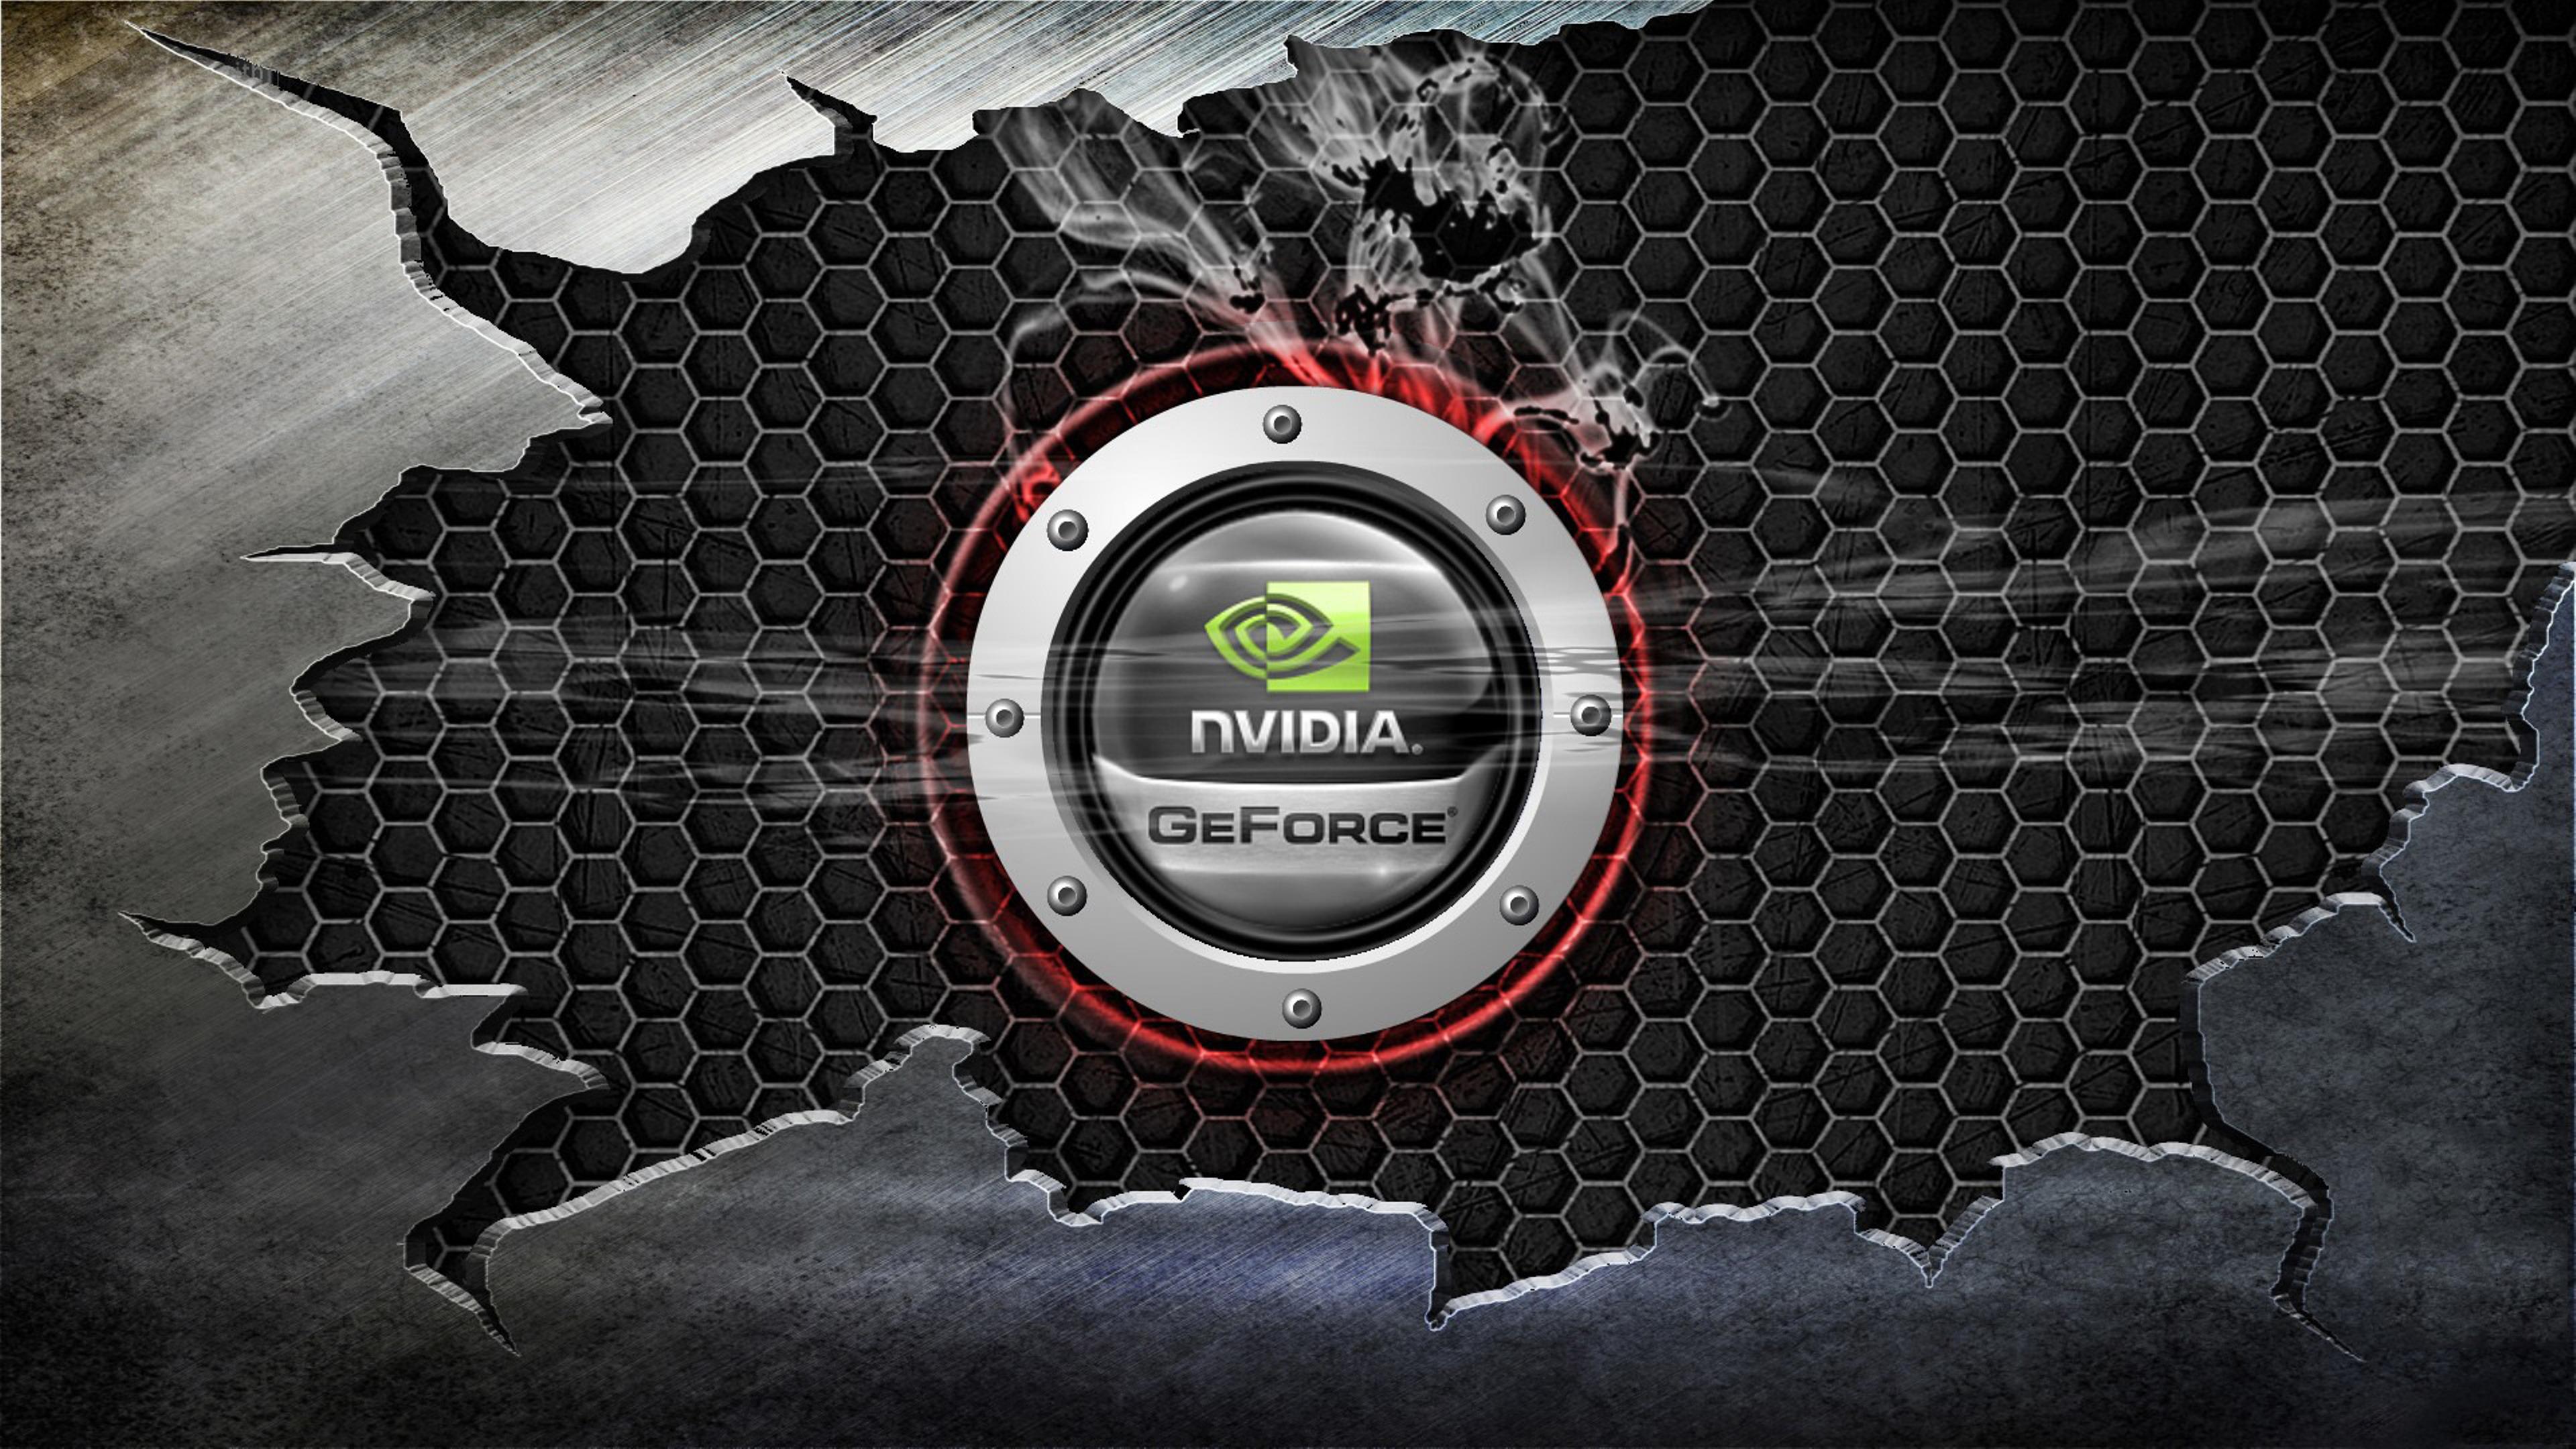 nVidia GeForce logo